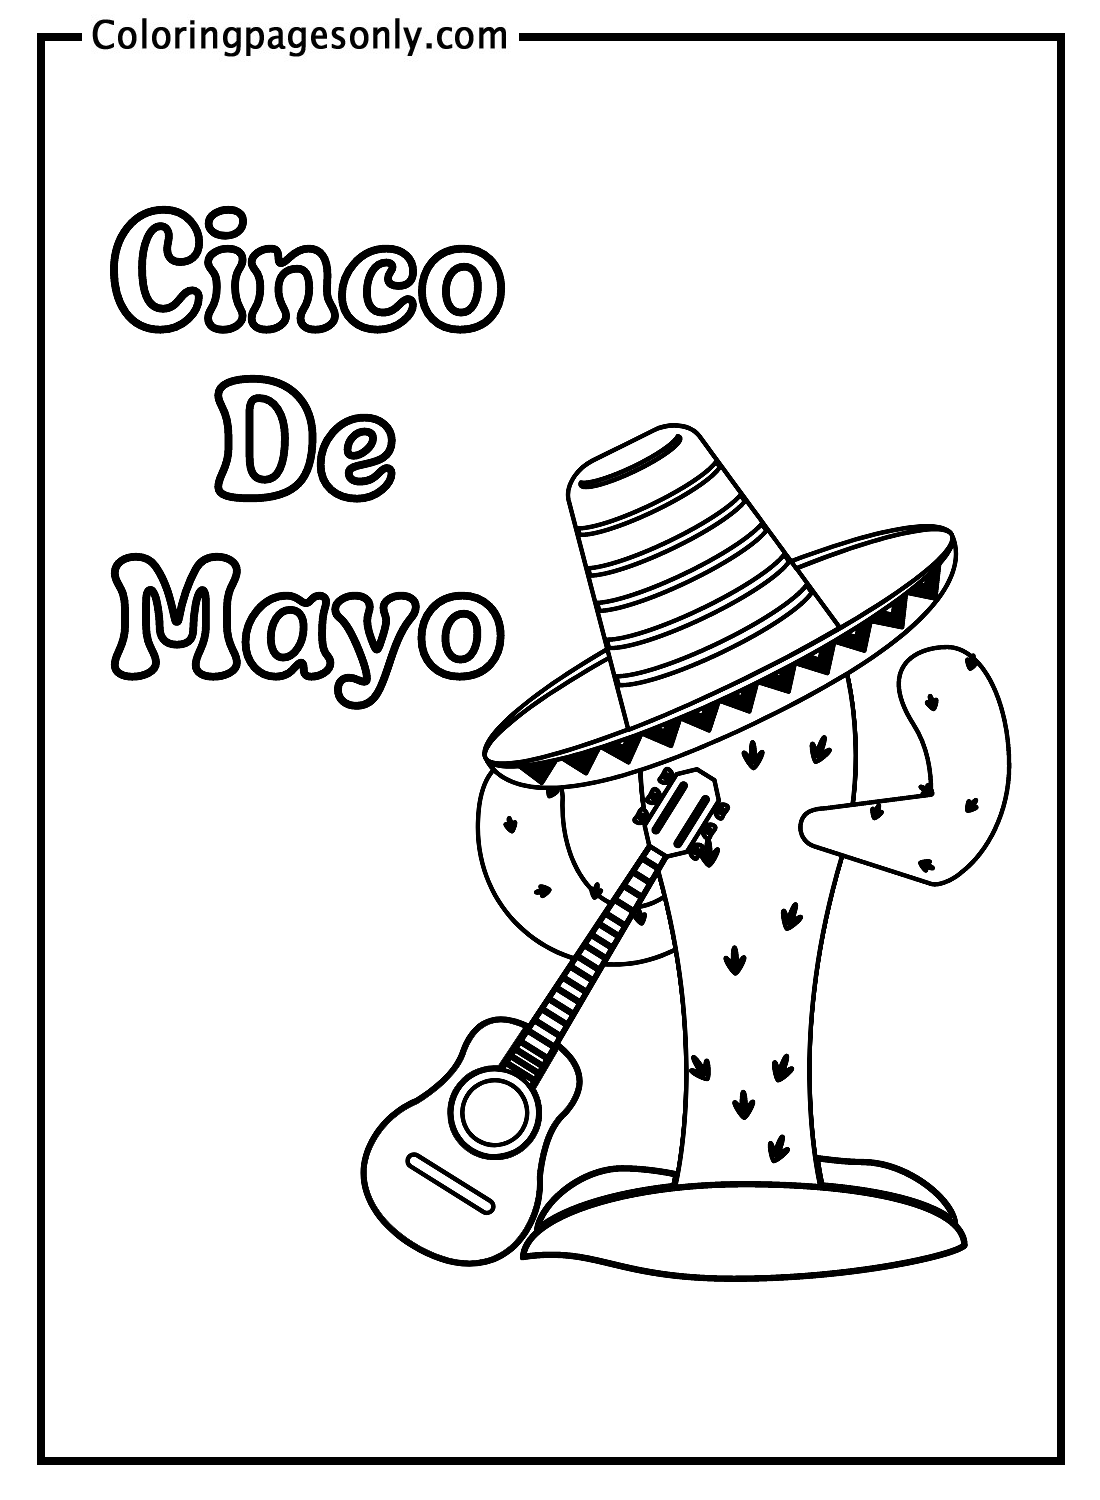 Cactus e cappello messicano con chitarra di Cinco De Mayo